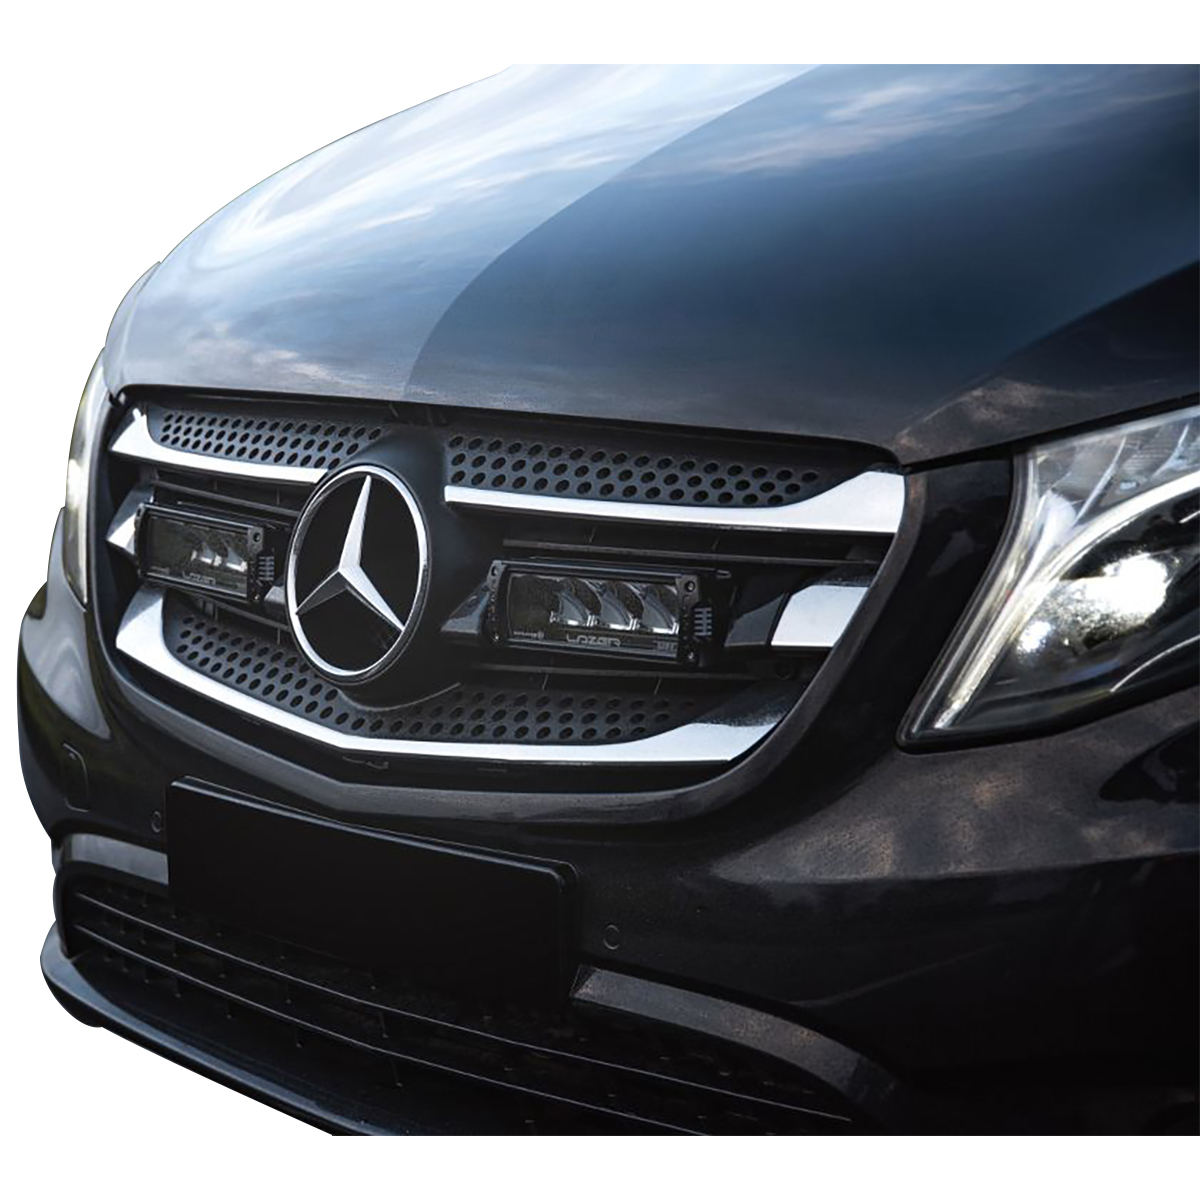 LED Fernscheinwerfer für Mercedes Benz Zusatzscheinwerfer Scheinwerfer  Leuchten